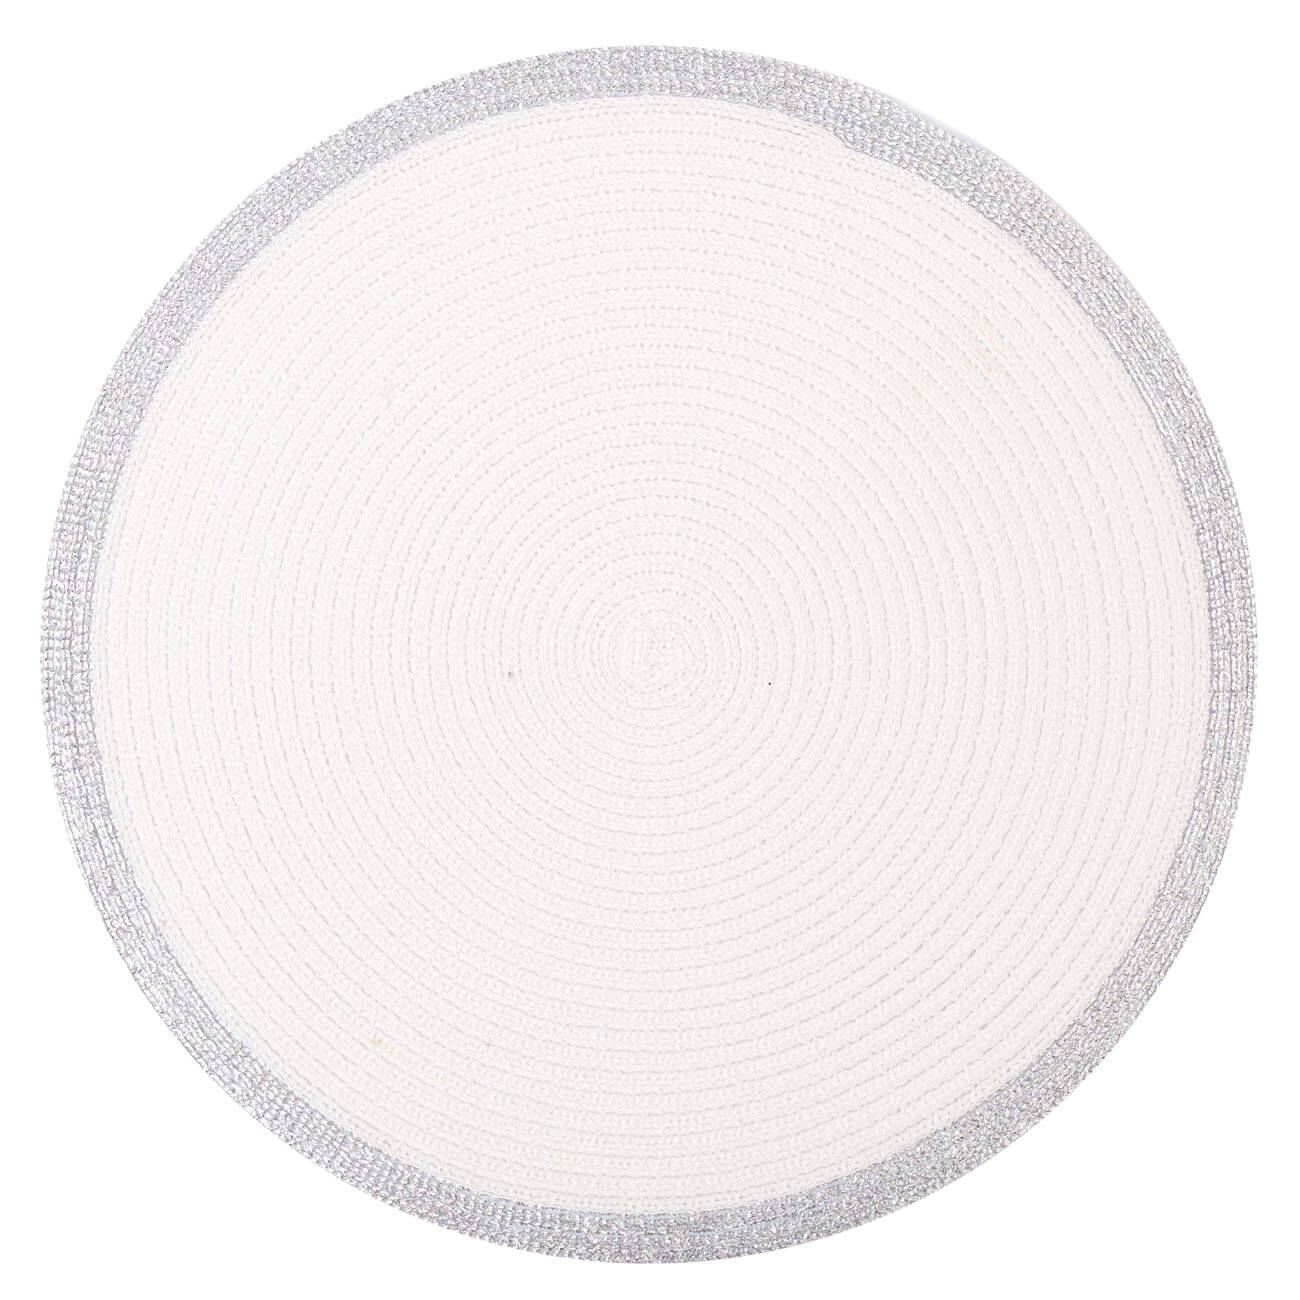 Салфетка под приборы, 38 см, полиэстер, круглая, белая, Серебристая кайма, Rotary rim изображение № 1